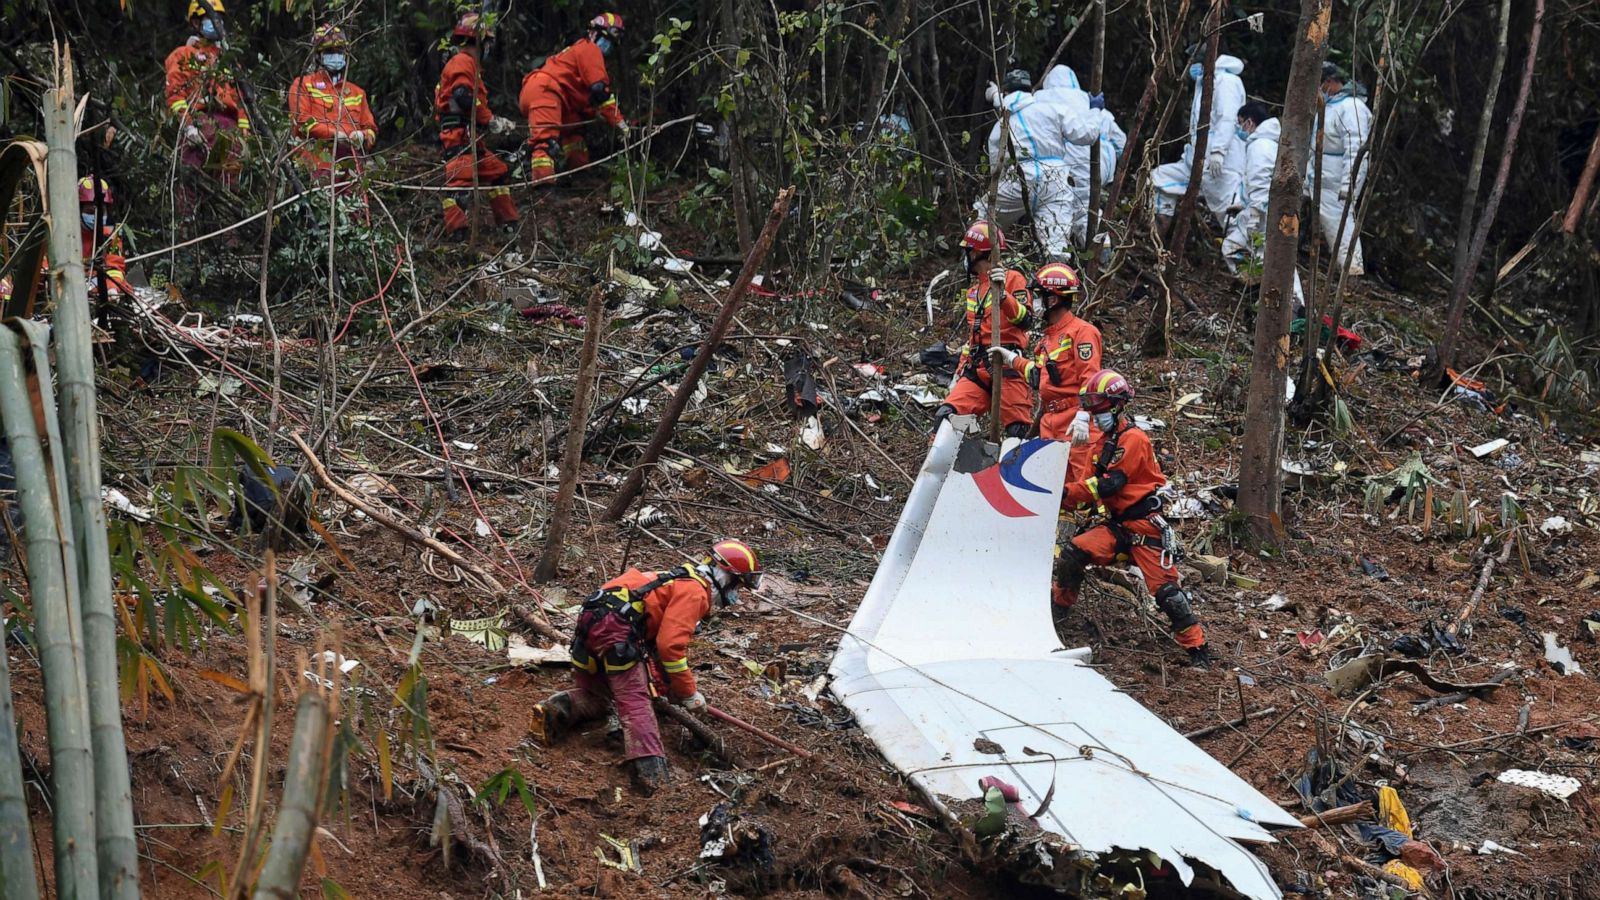 Vụ tai nạn máy bay khiến 132 người chết ở Trung Quốc là do hành động cố tình?